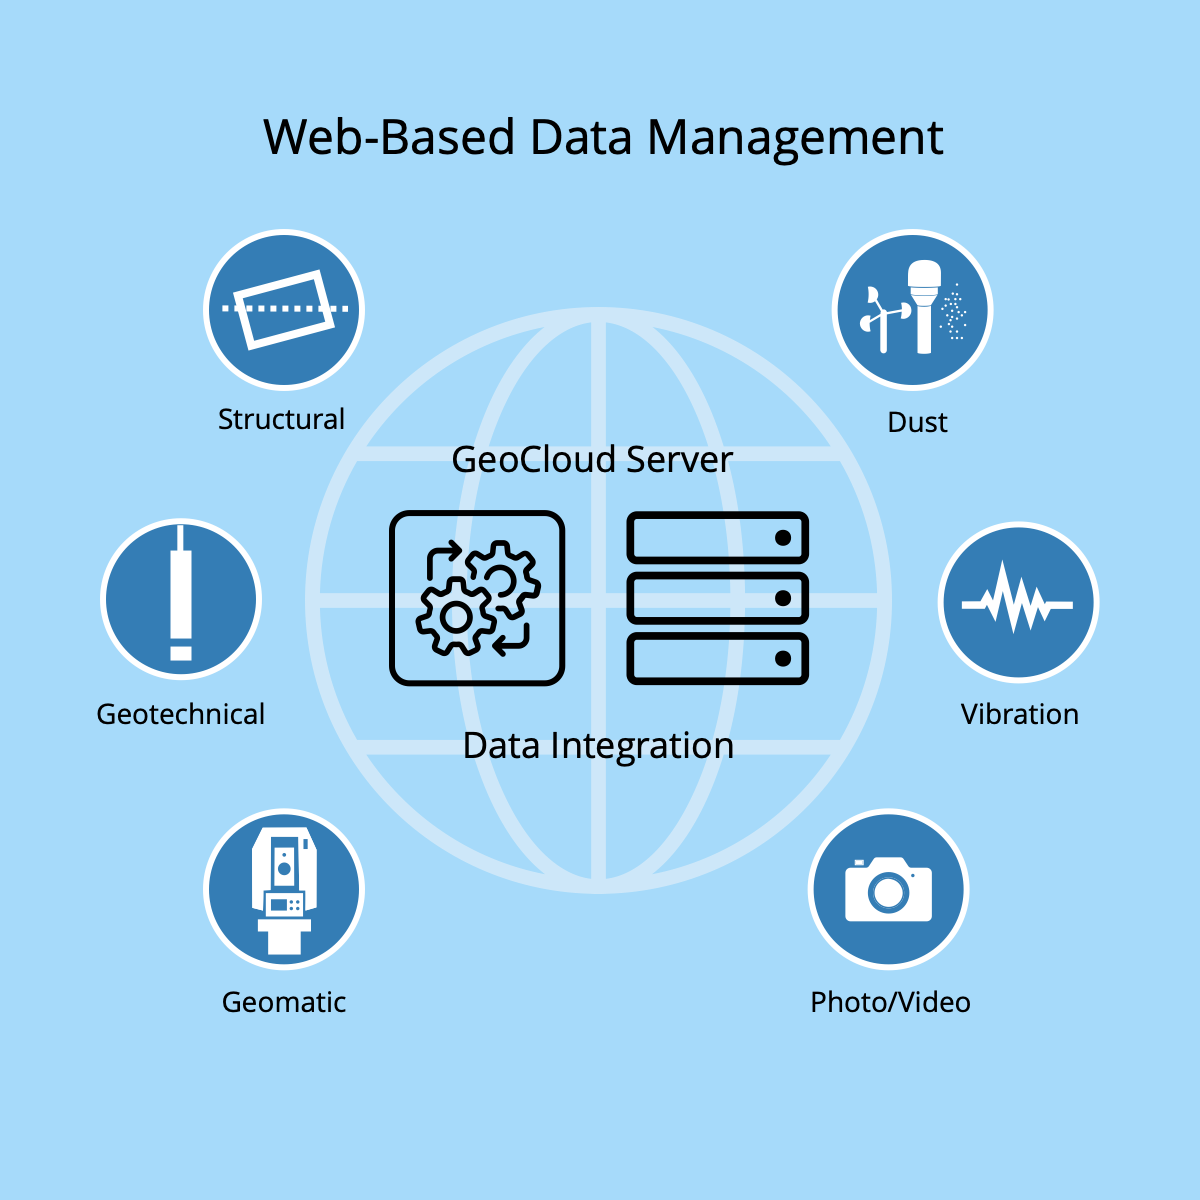 Web-Based Data Management